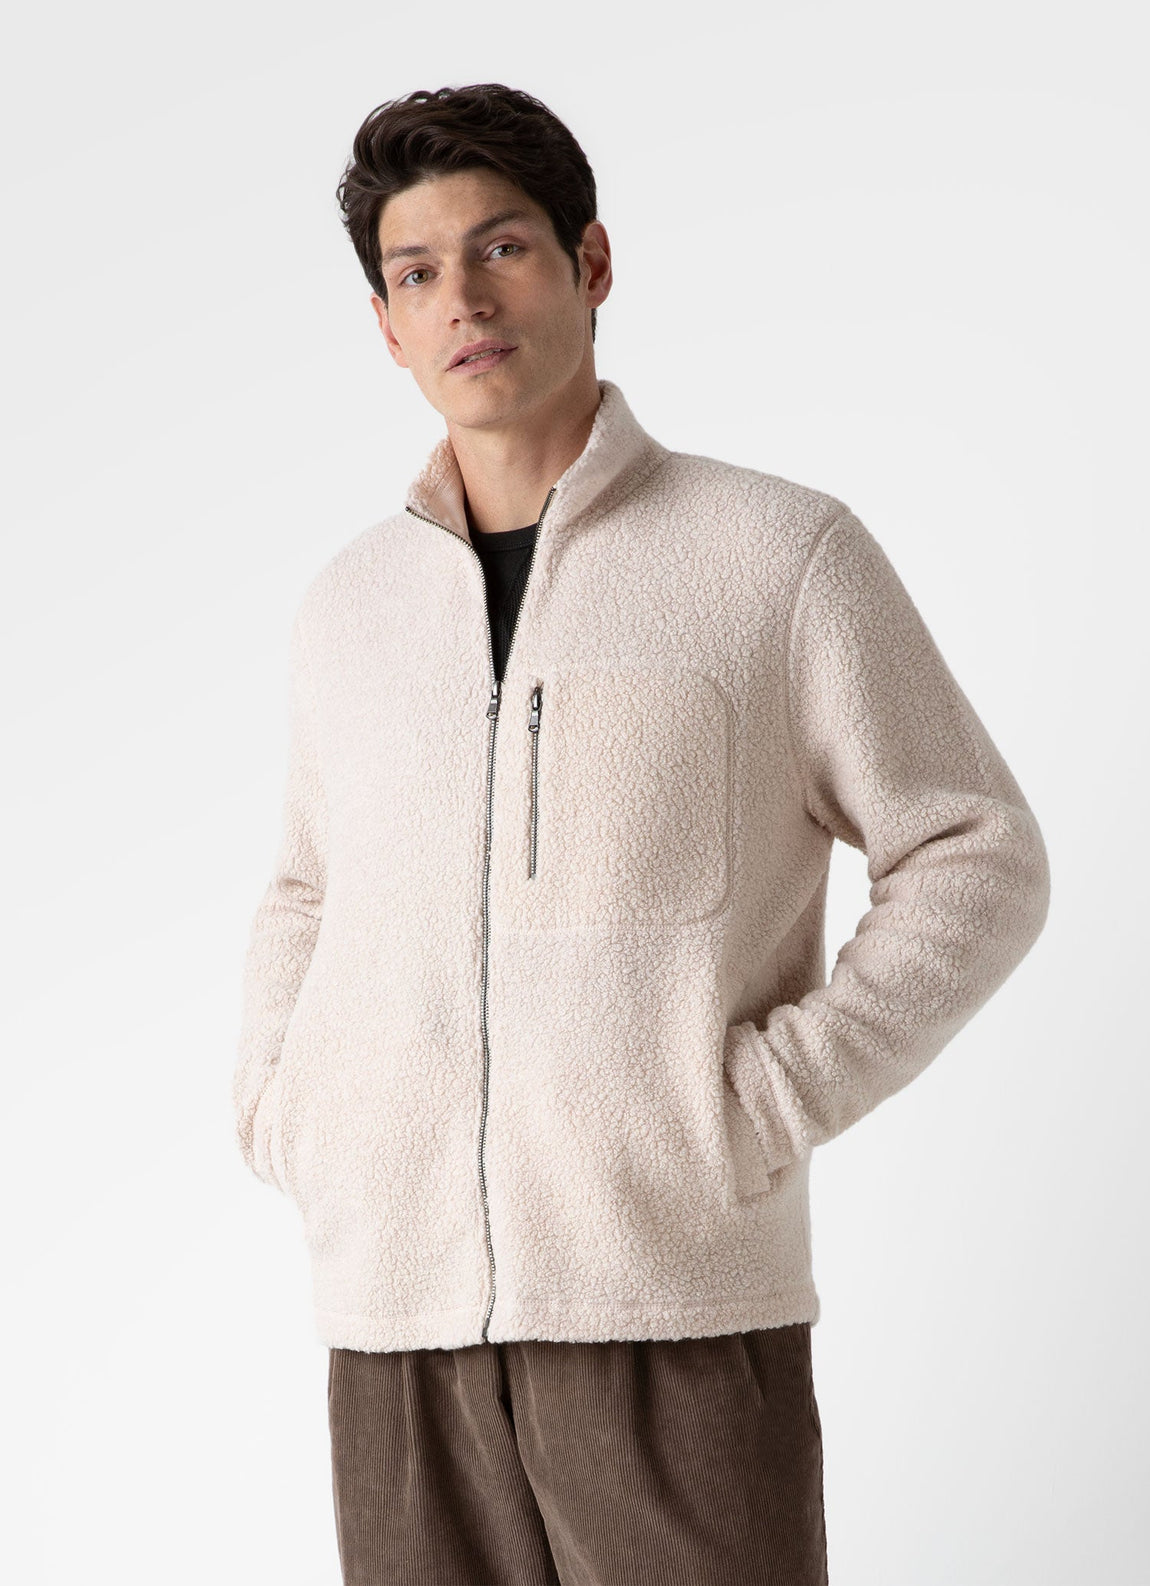 Men's Wool Fleece Jacket in Ecru | Sunspel